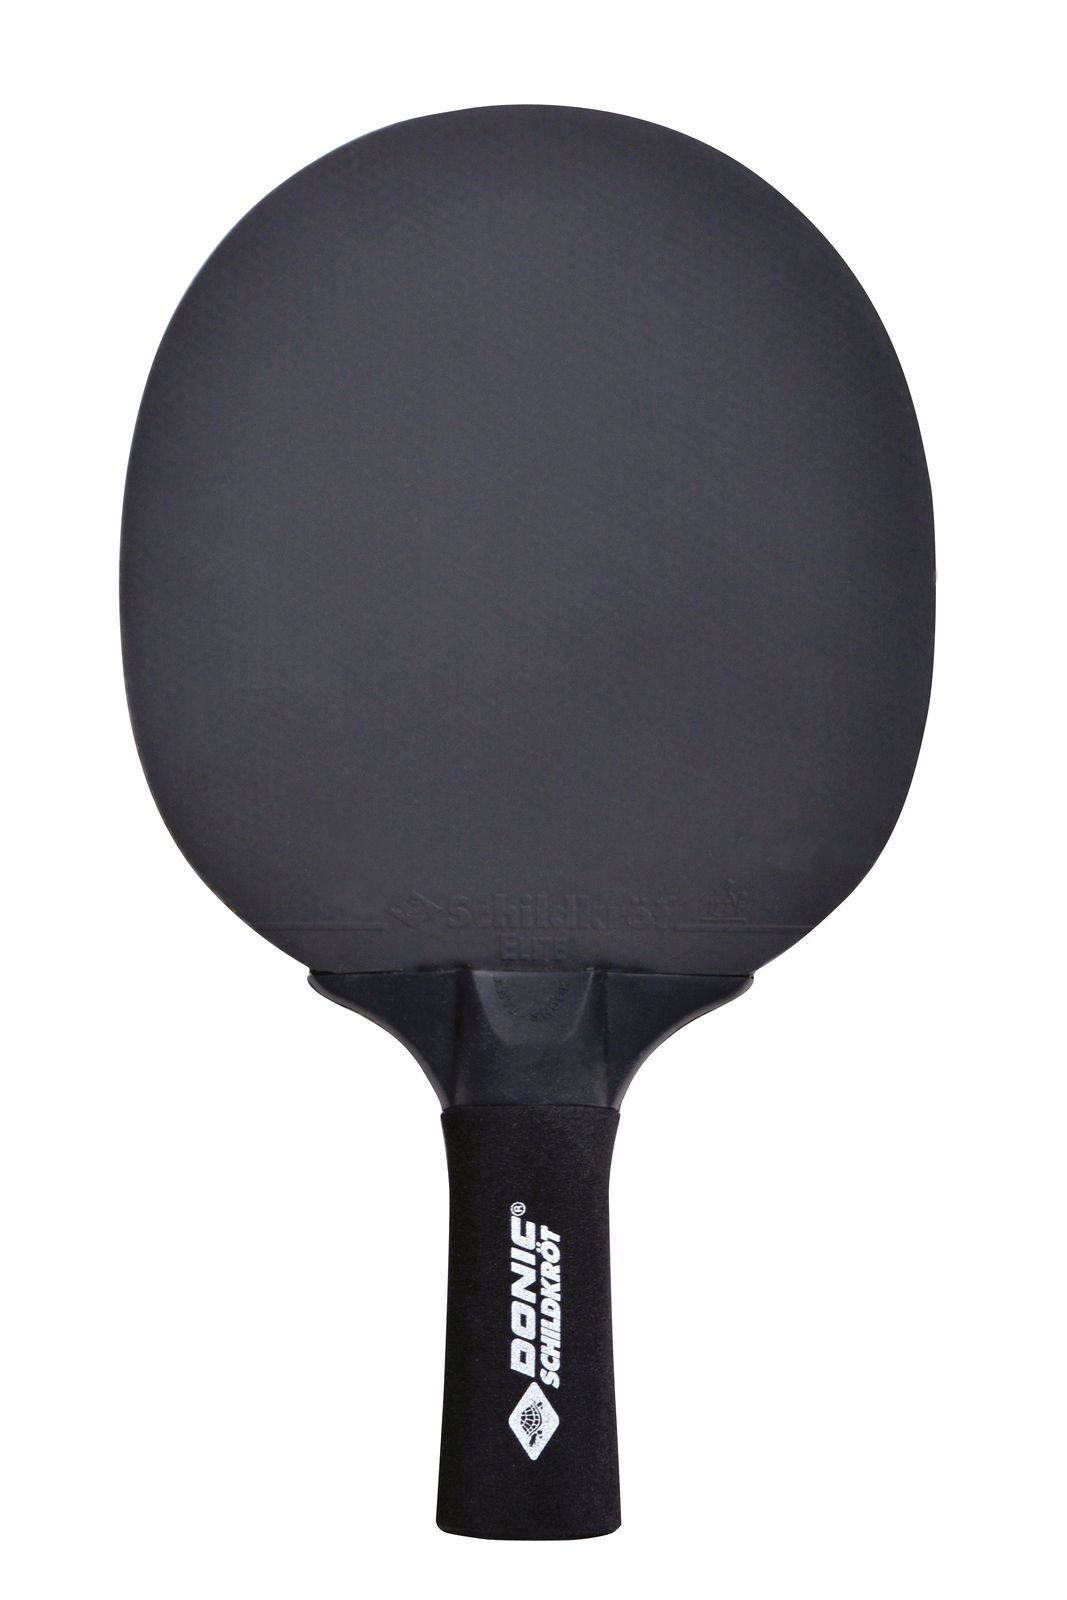 Donic-Schildkröt Tischtennisschläger Sensation Line Schläger Bat Racket Tennis Tischtennis 500, Table